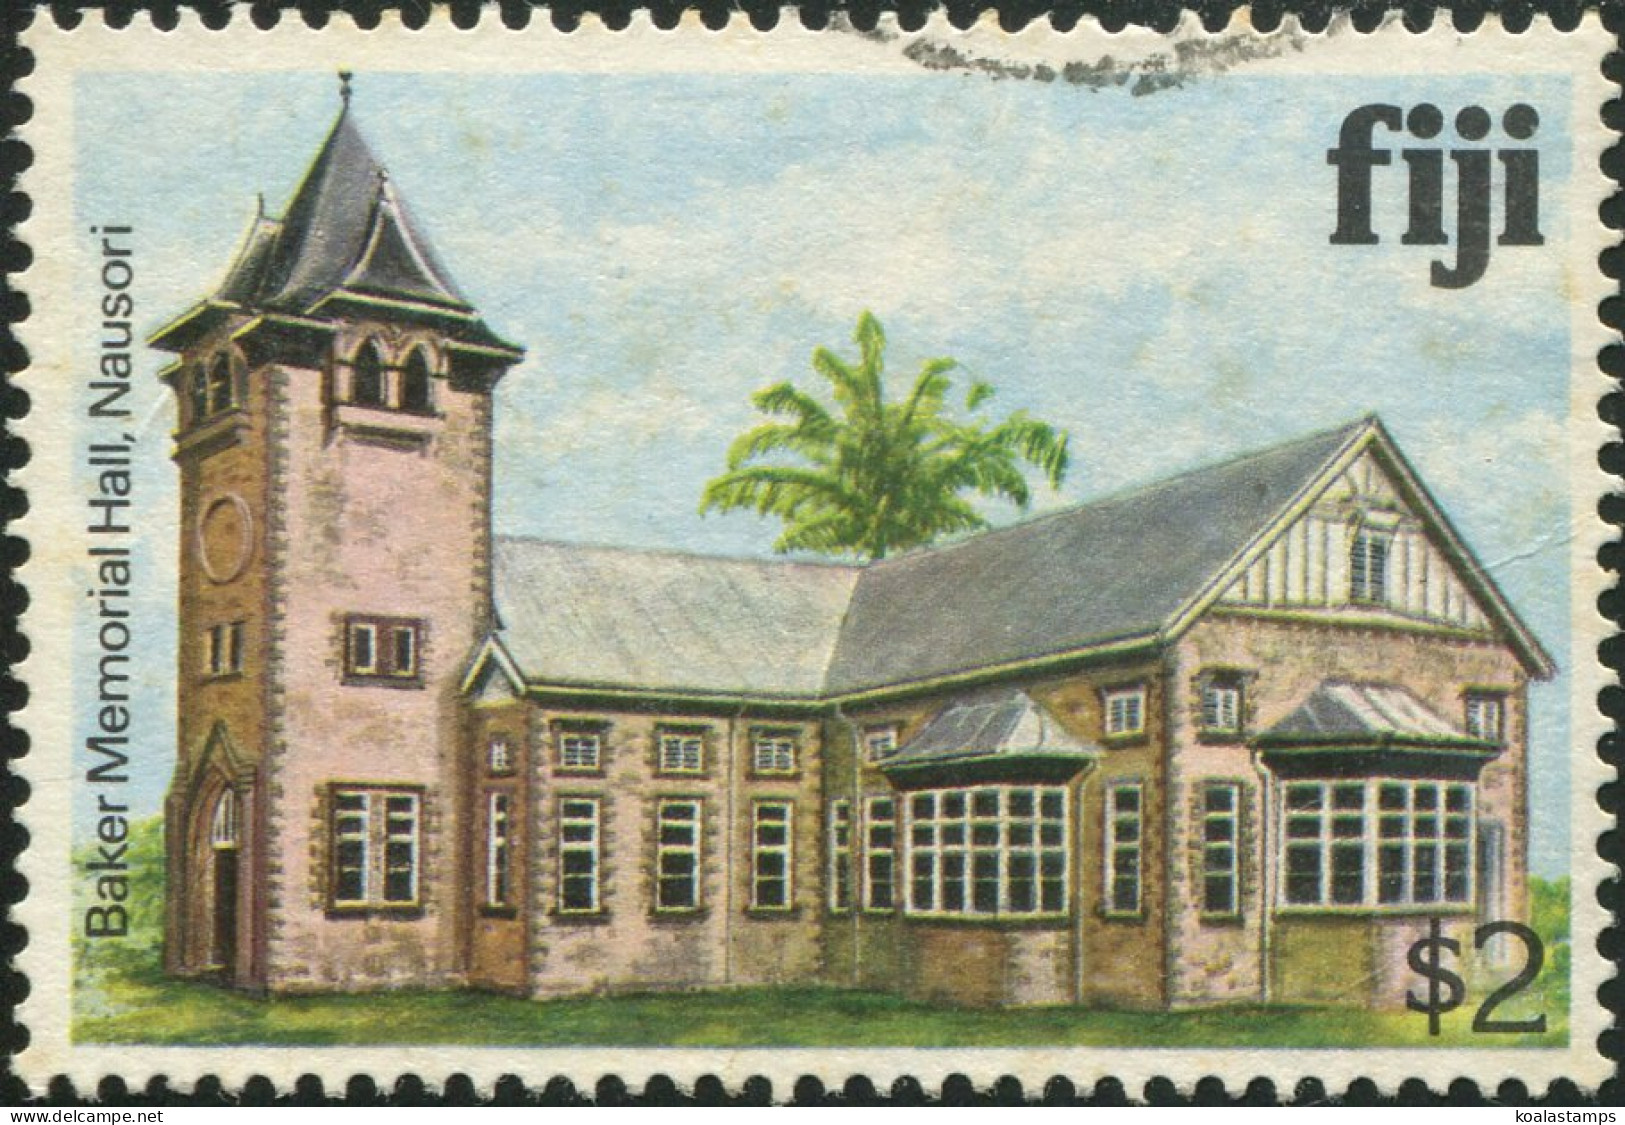 Fiji 1979 SG595A $2 Memorial Hall FU - Fiji (1970-...)